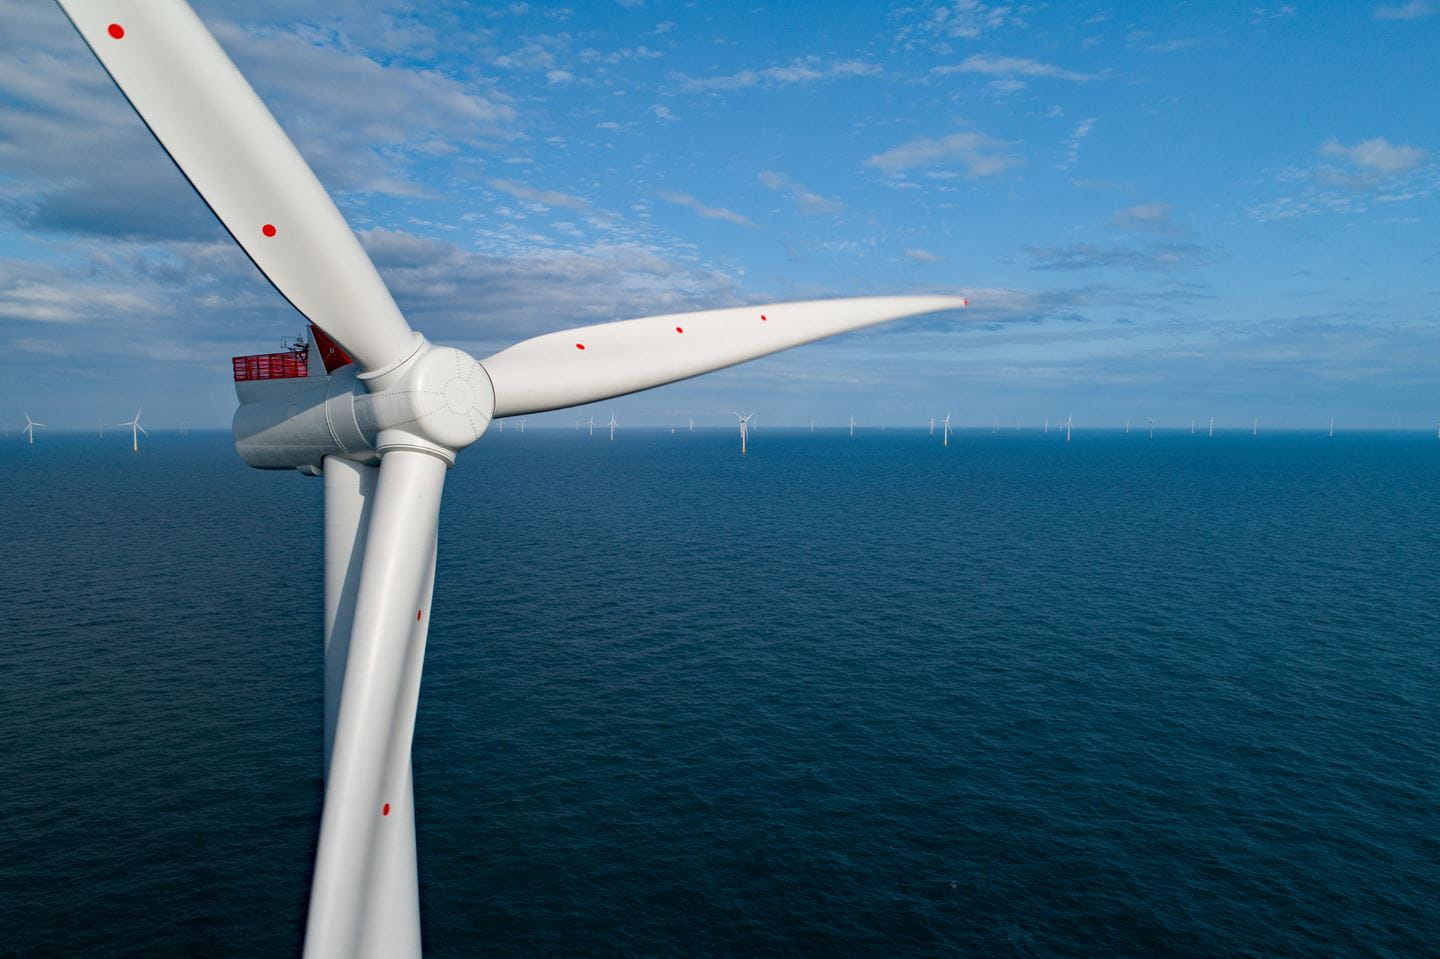 Ørsted, Siemens Gamesa kickstart offshore wind to hydrogen project